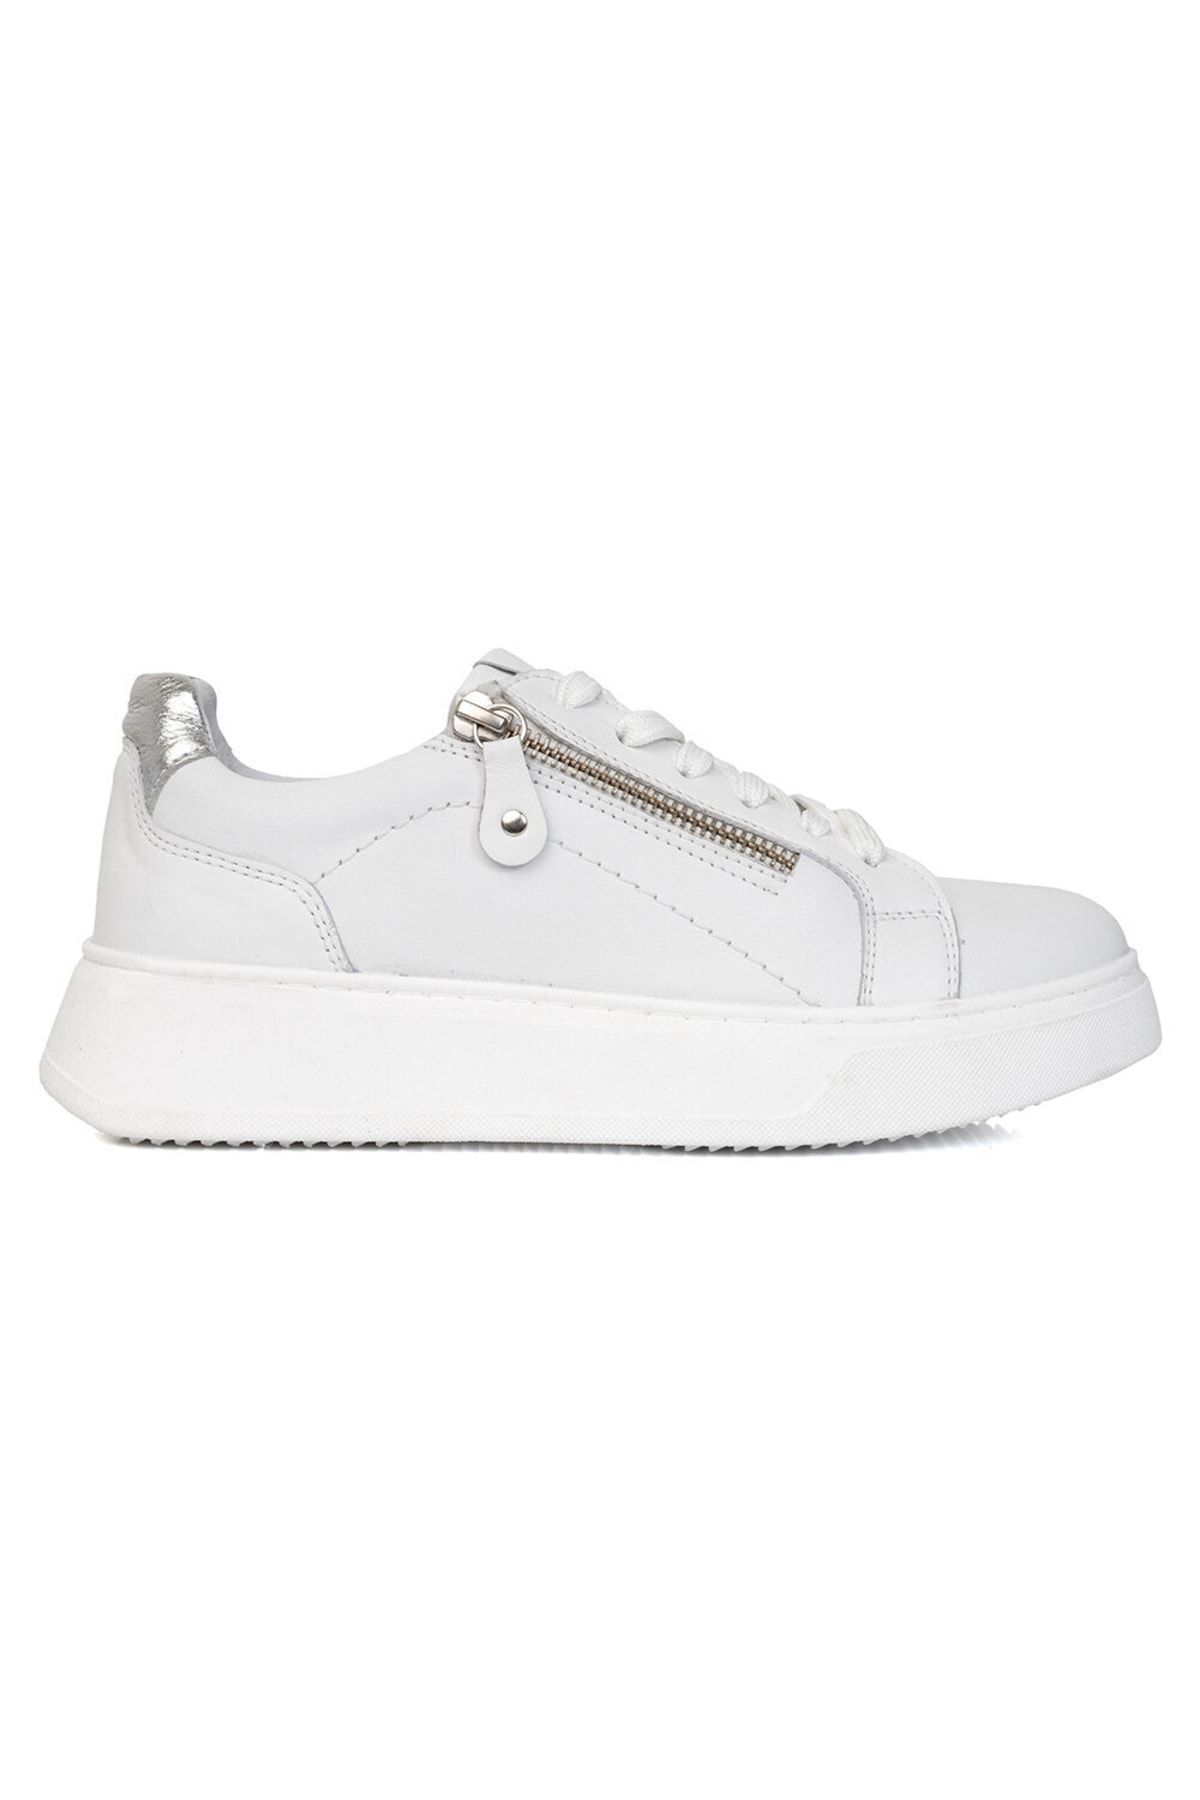 Greyder Kadın Beyaz Hakiki Deri Sneaker Ayakkabı 3y2sa31353